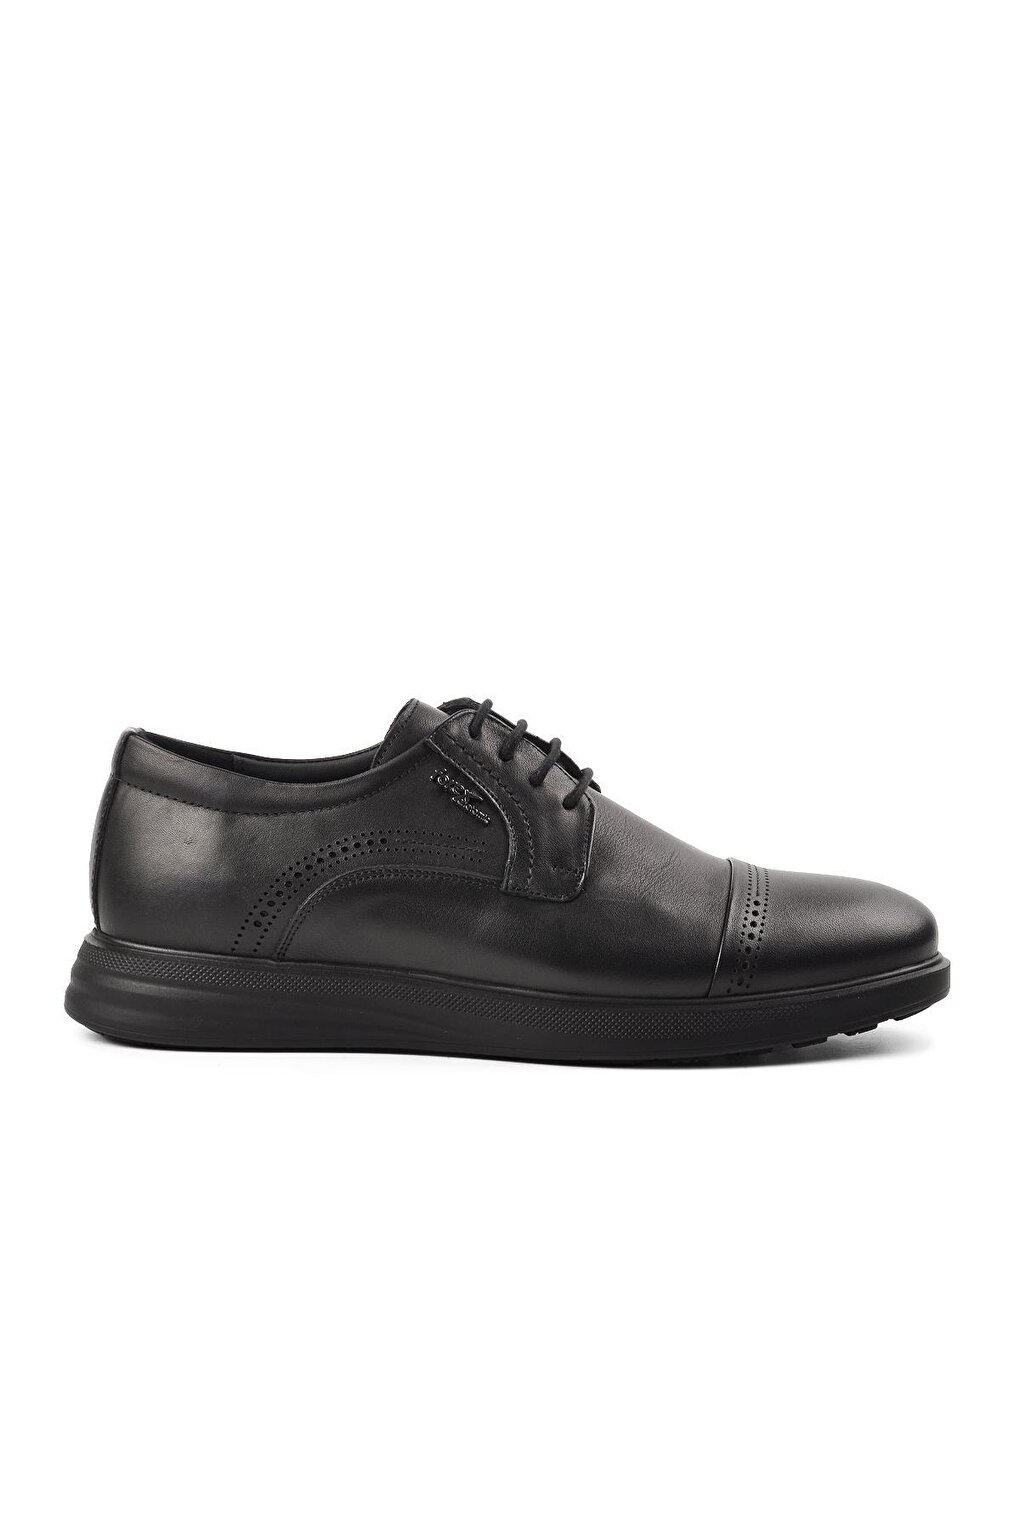 Черные мужские классические туфли из натуральной кожи на шнуровке 2918 Ayakmod